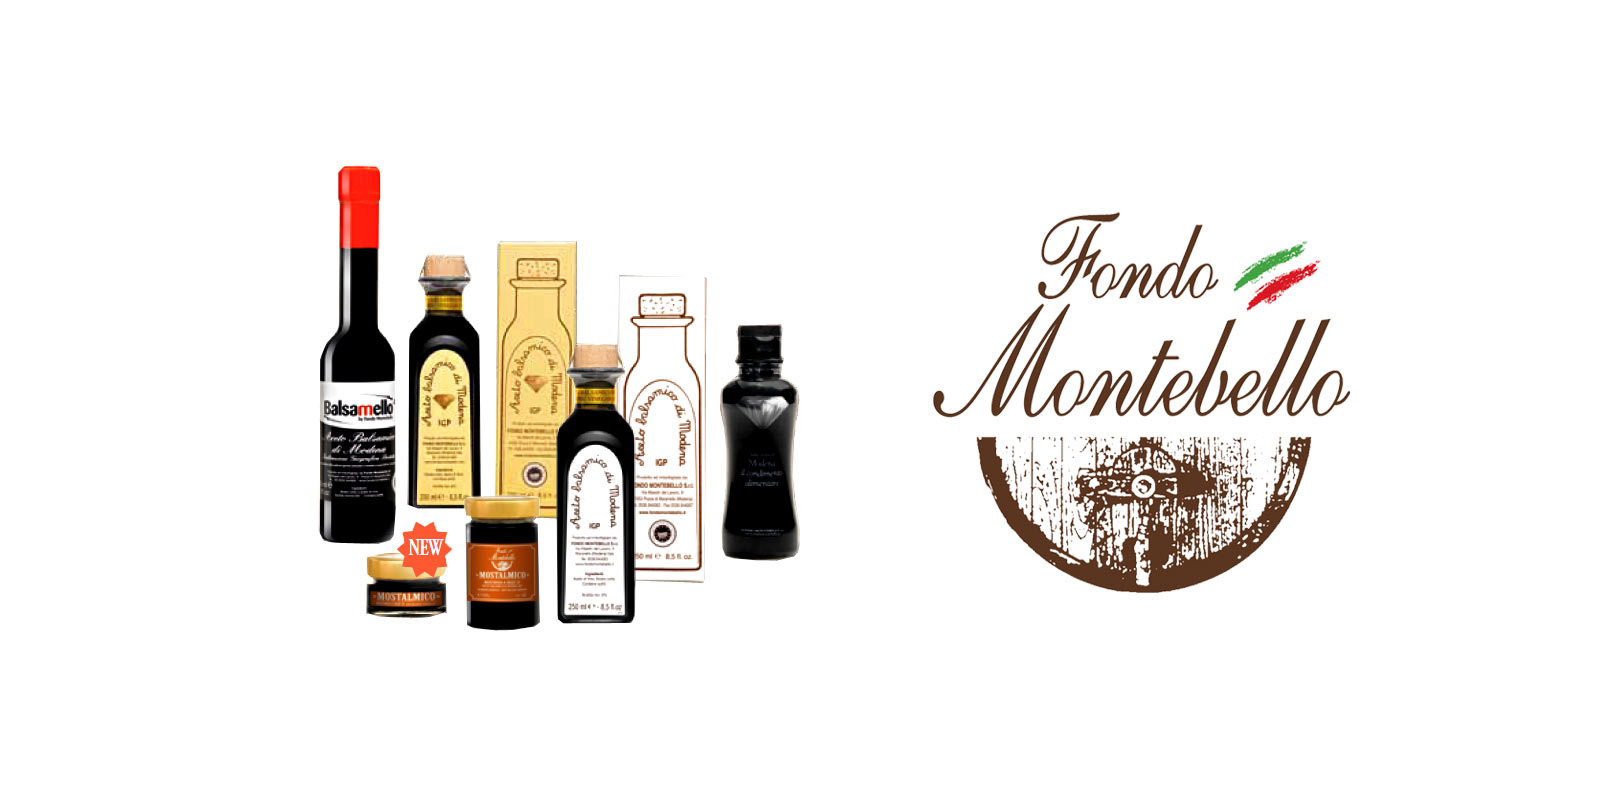 Aceto Balsamico Fondo Montebello Fondo Montebello produceren op oude en traditionele productieprocessen een uitstekende balsamico azijn uit de regio Maranello in Italië.